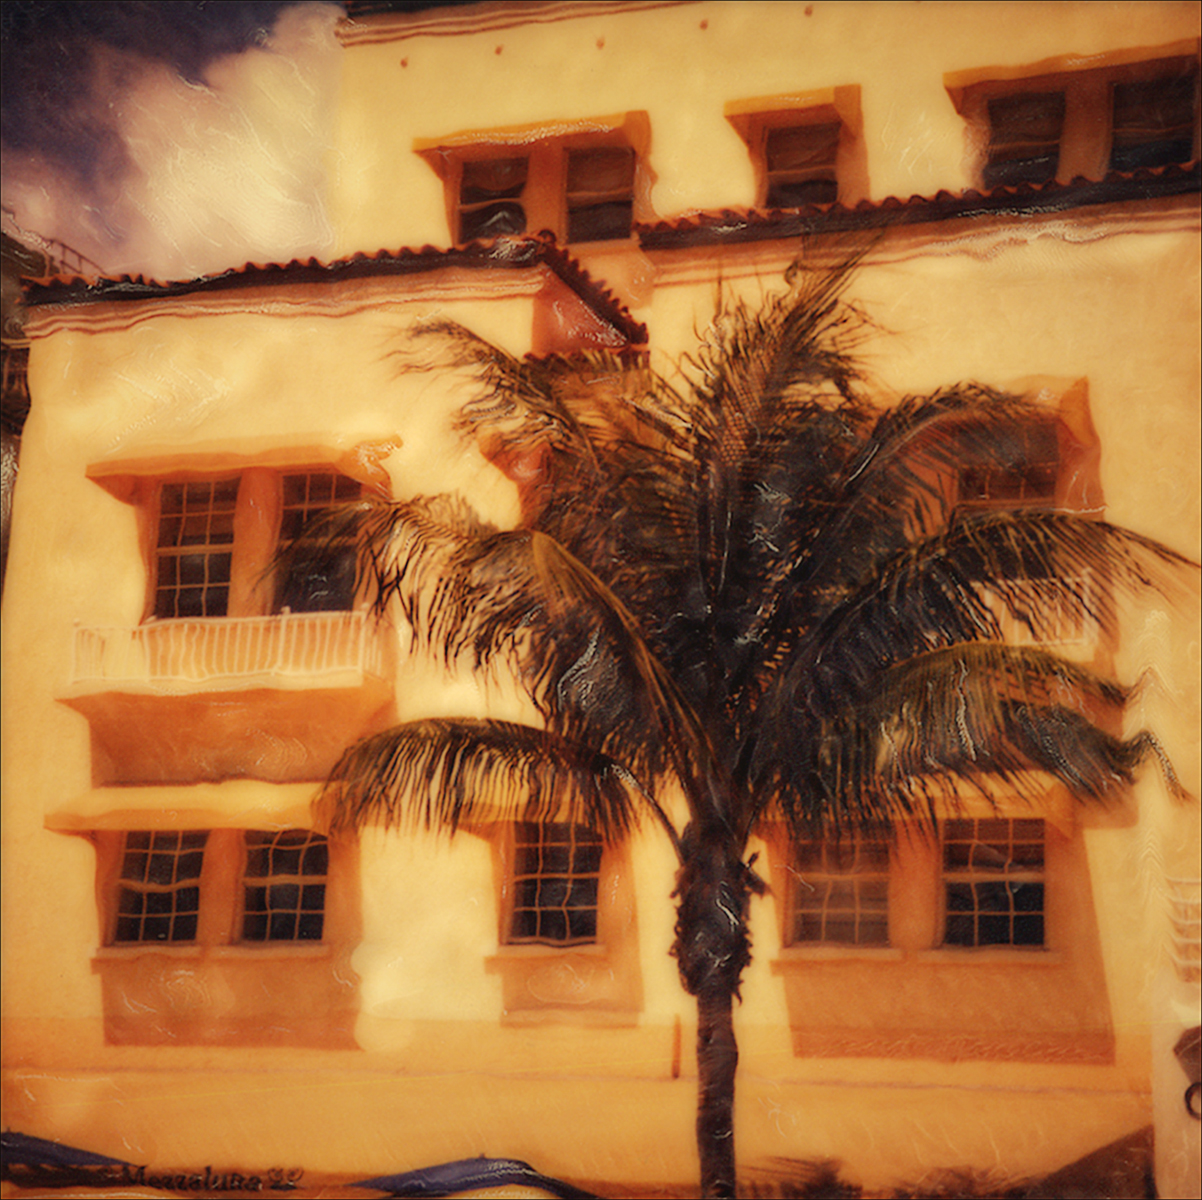 "Miami Retro" <br>Classic Miami Apartment Building with Palm Tree and Old  Building, Miami Beach, FL